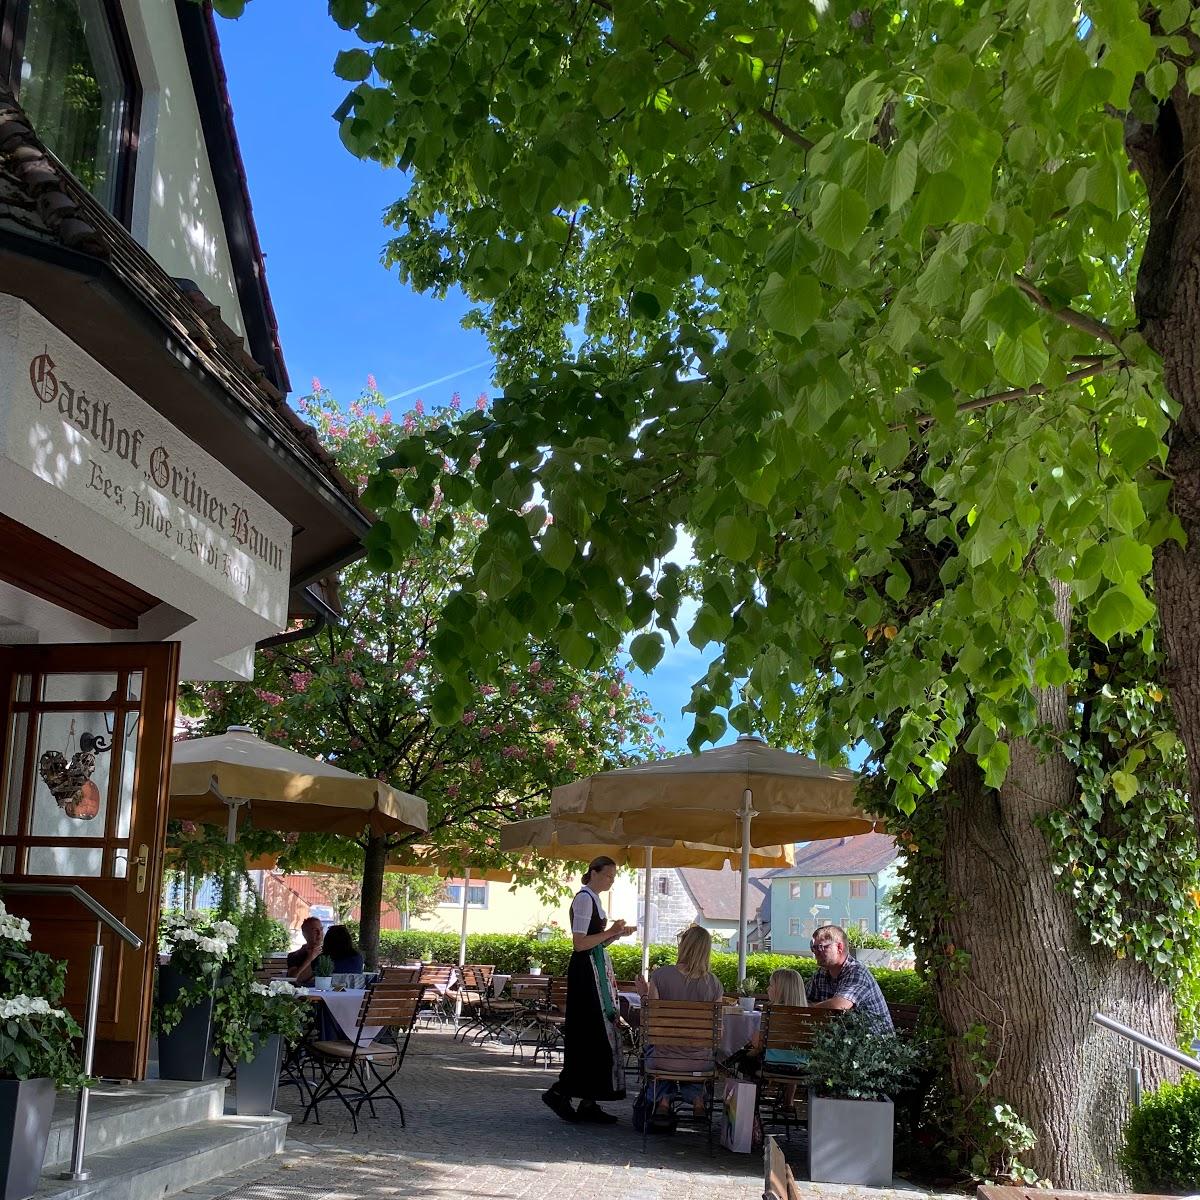 Restaurant "Gasthof Grüner Baum" in Engelthal